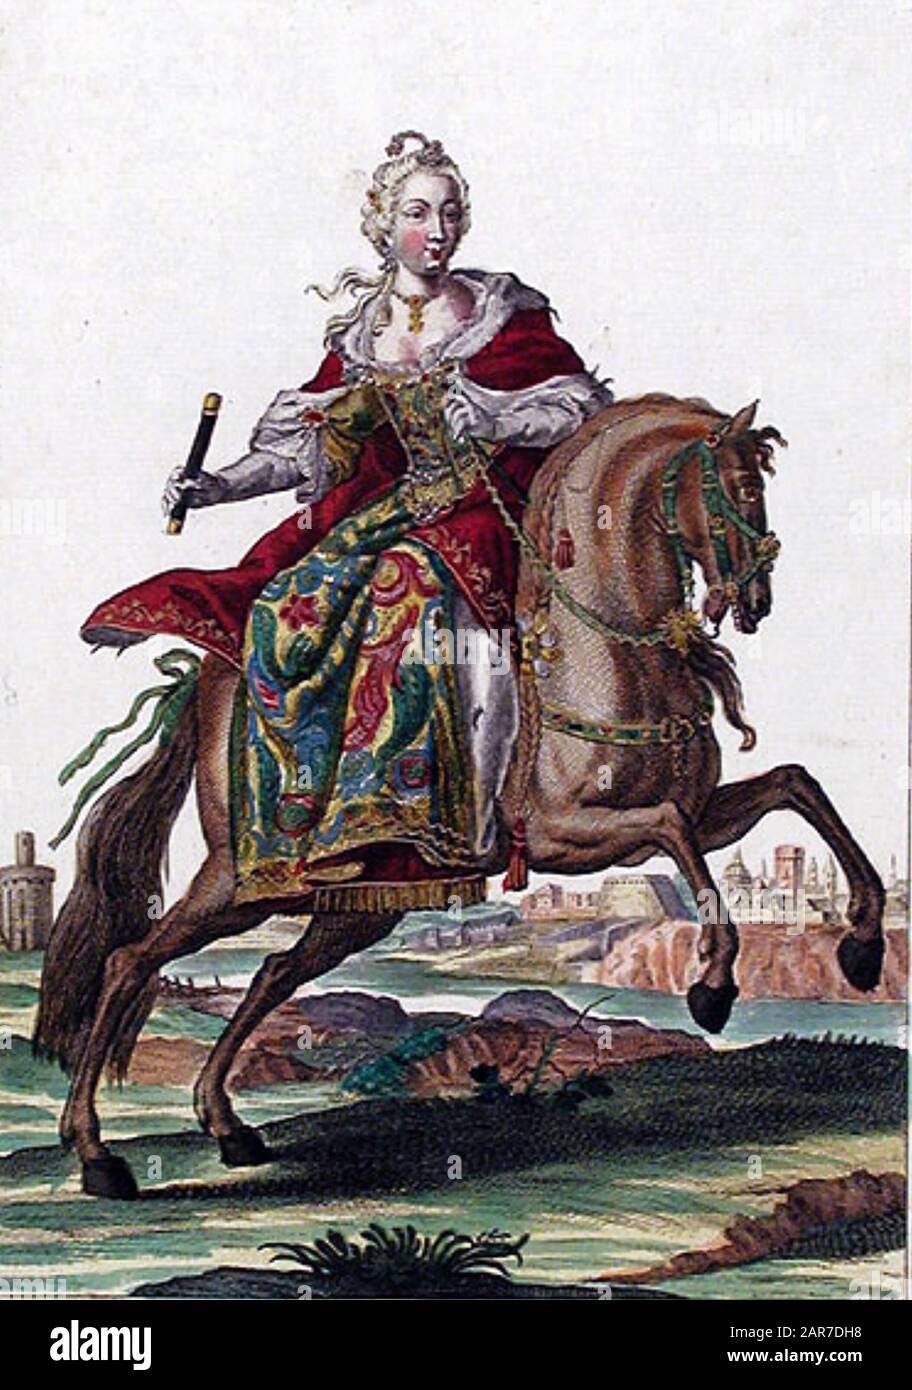 Archiduquesa ANNA MARIA DE AUSTRIA (1718-1744) Gobernador de los países Bajos austriacos Foto de stock